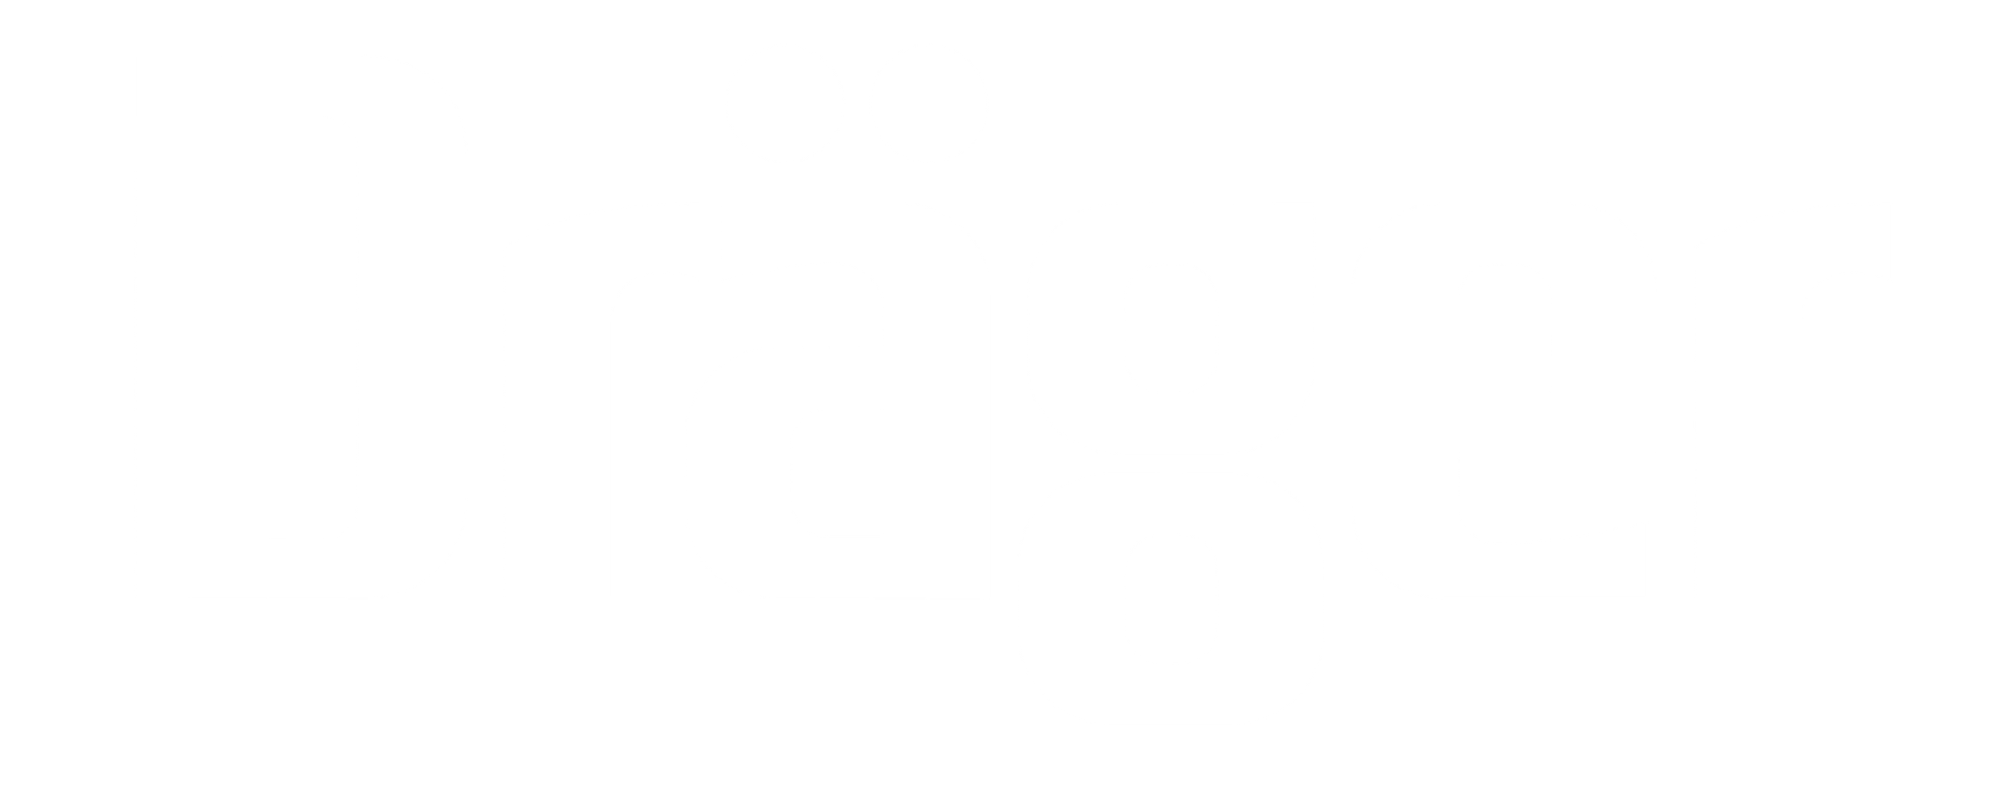 Customer logos - 2000x800 - Drager